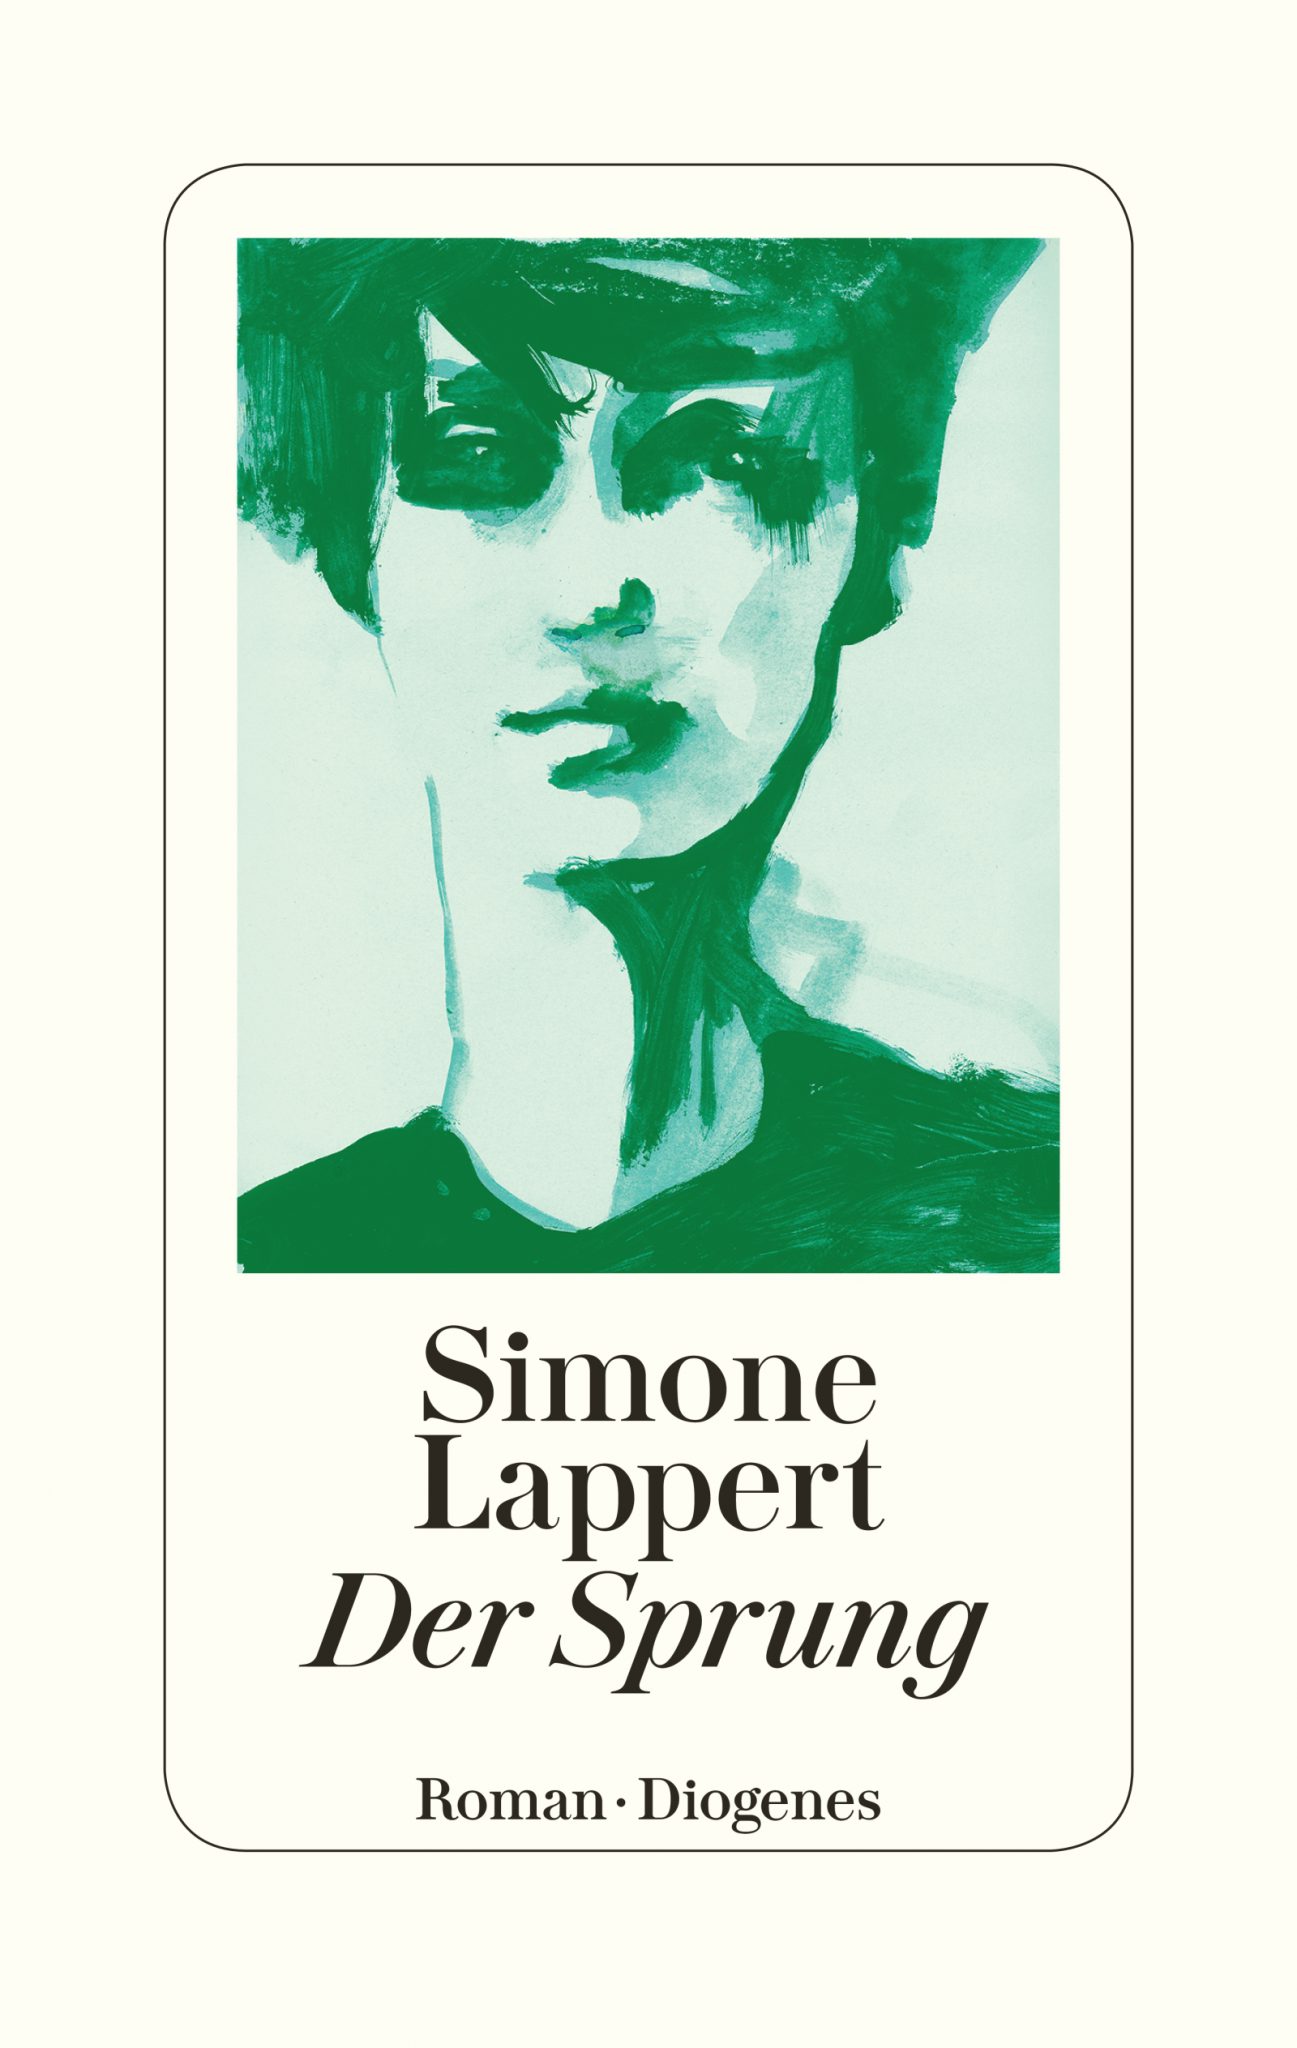 Simone Lappert veröffentlicht ihren zweiten Roman „Der Sprung“.